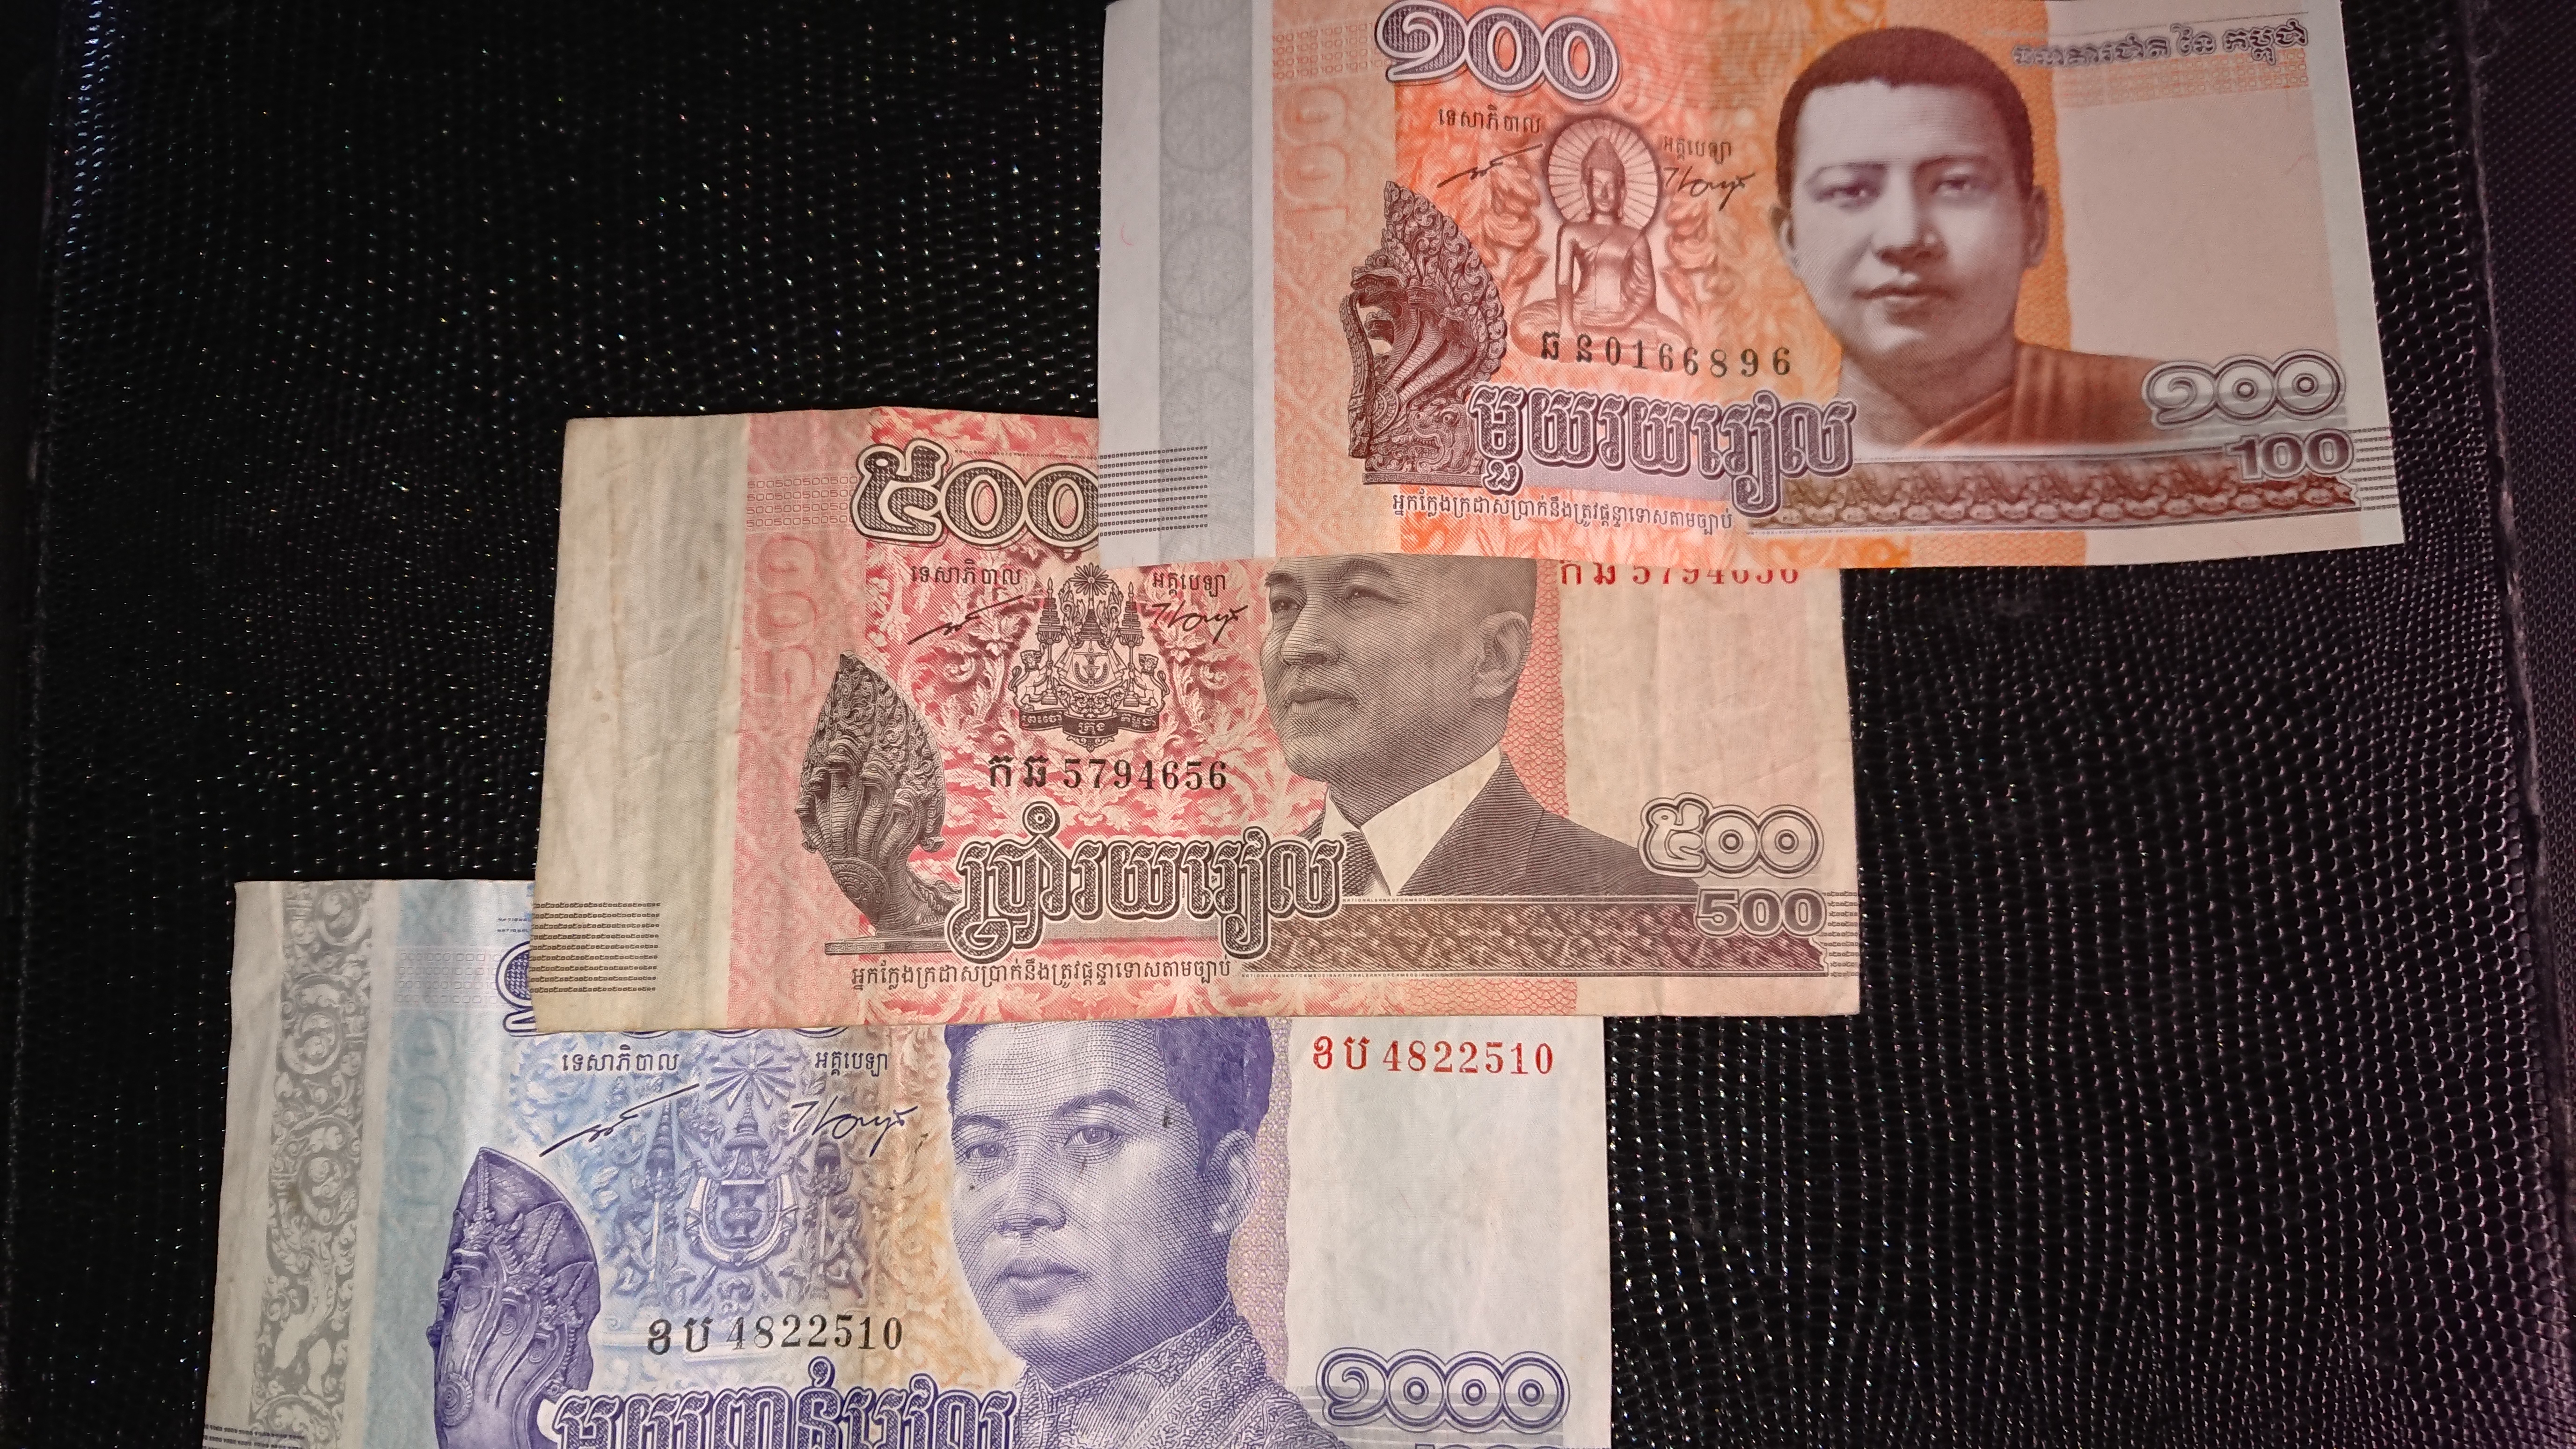 カンボジア国の情報 カンボジアの通貨は リエル と ドル を使用 カンボジア技能実習生 特定技能の送り出し機関